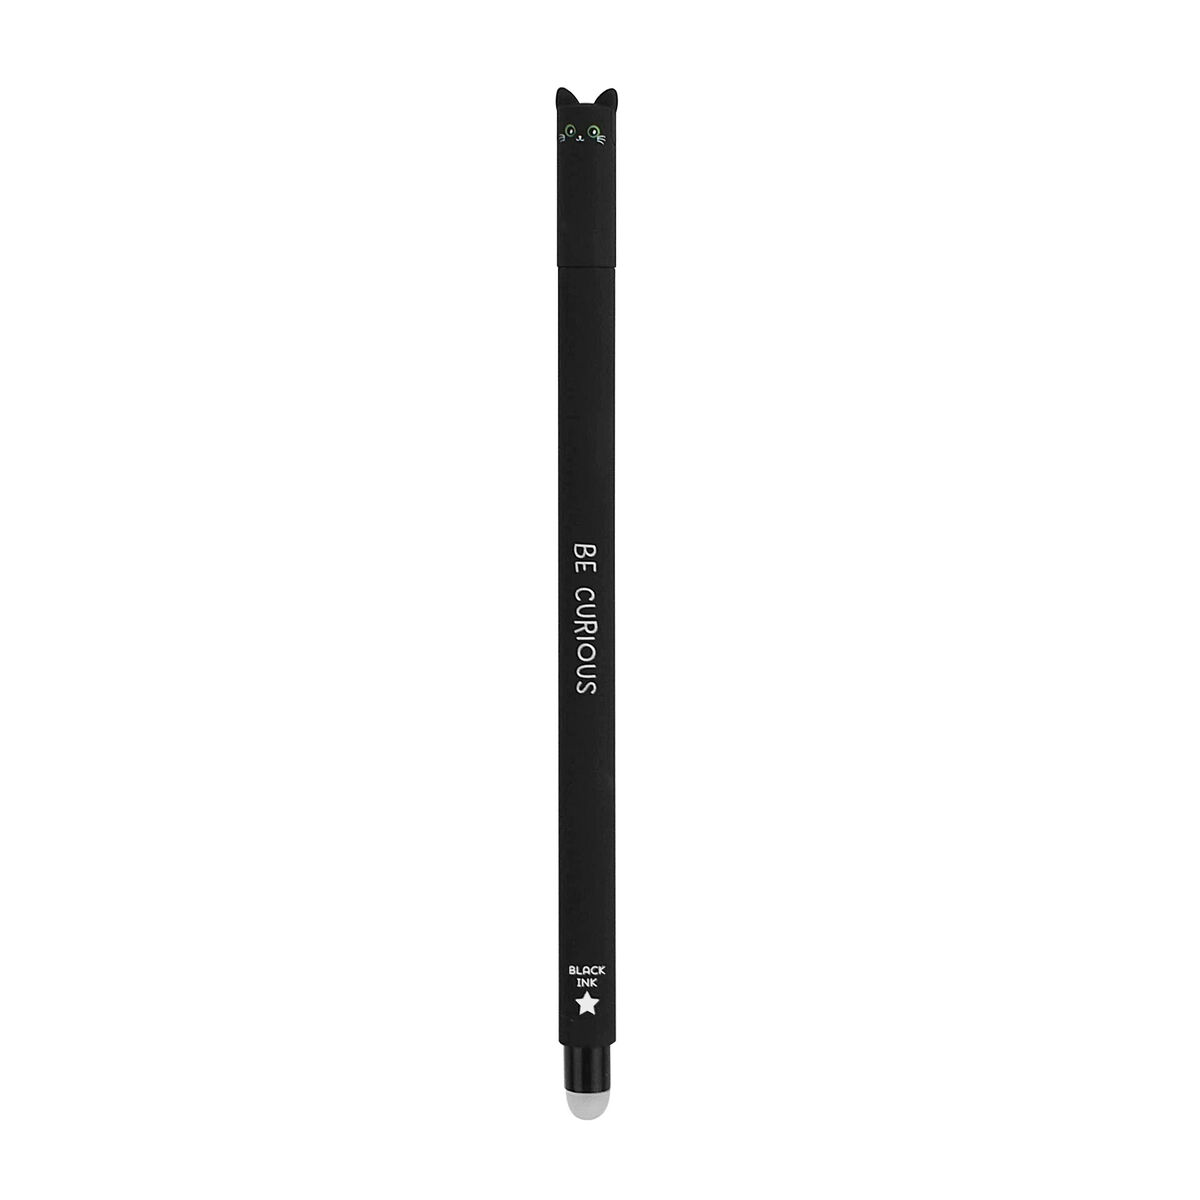 Refill per Penna Gel Cancellabile - Erasable Pen BLACK